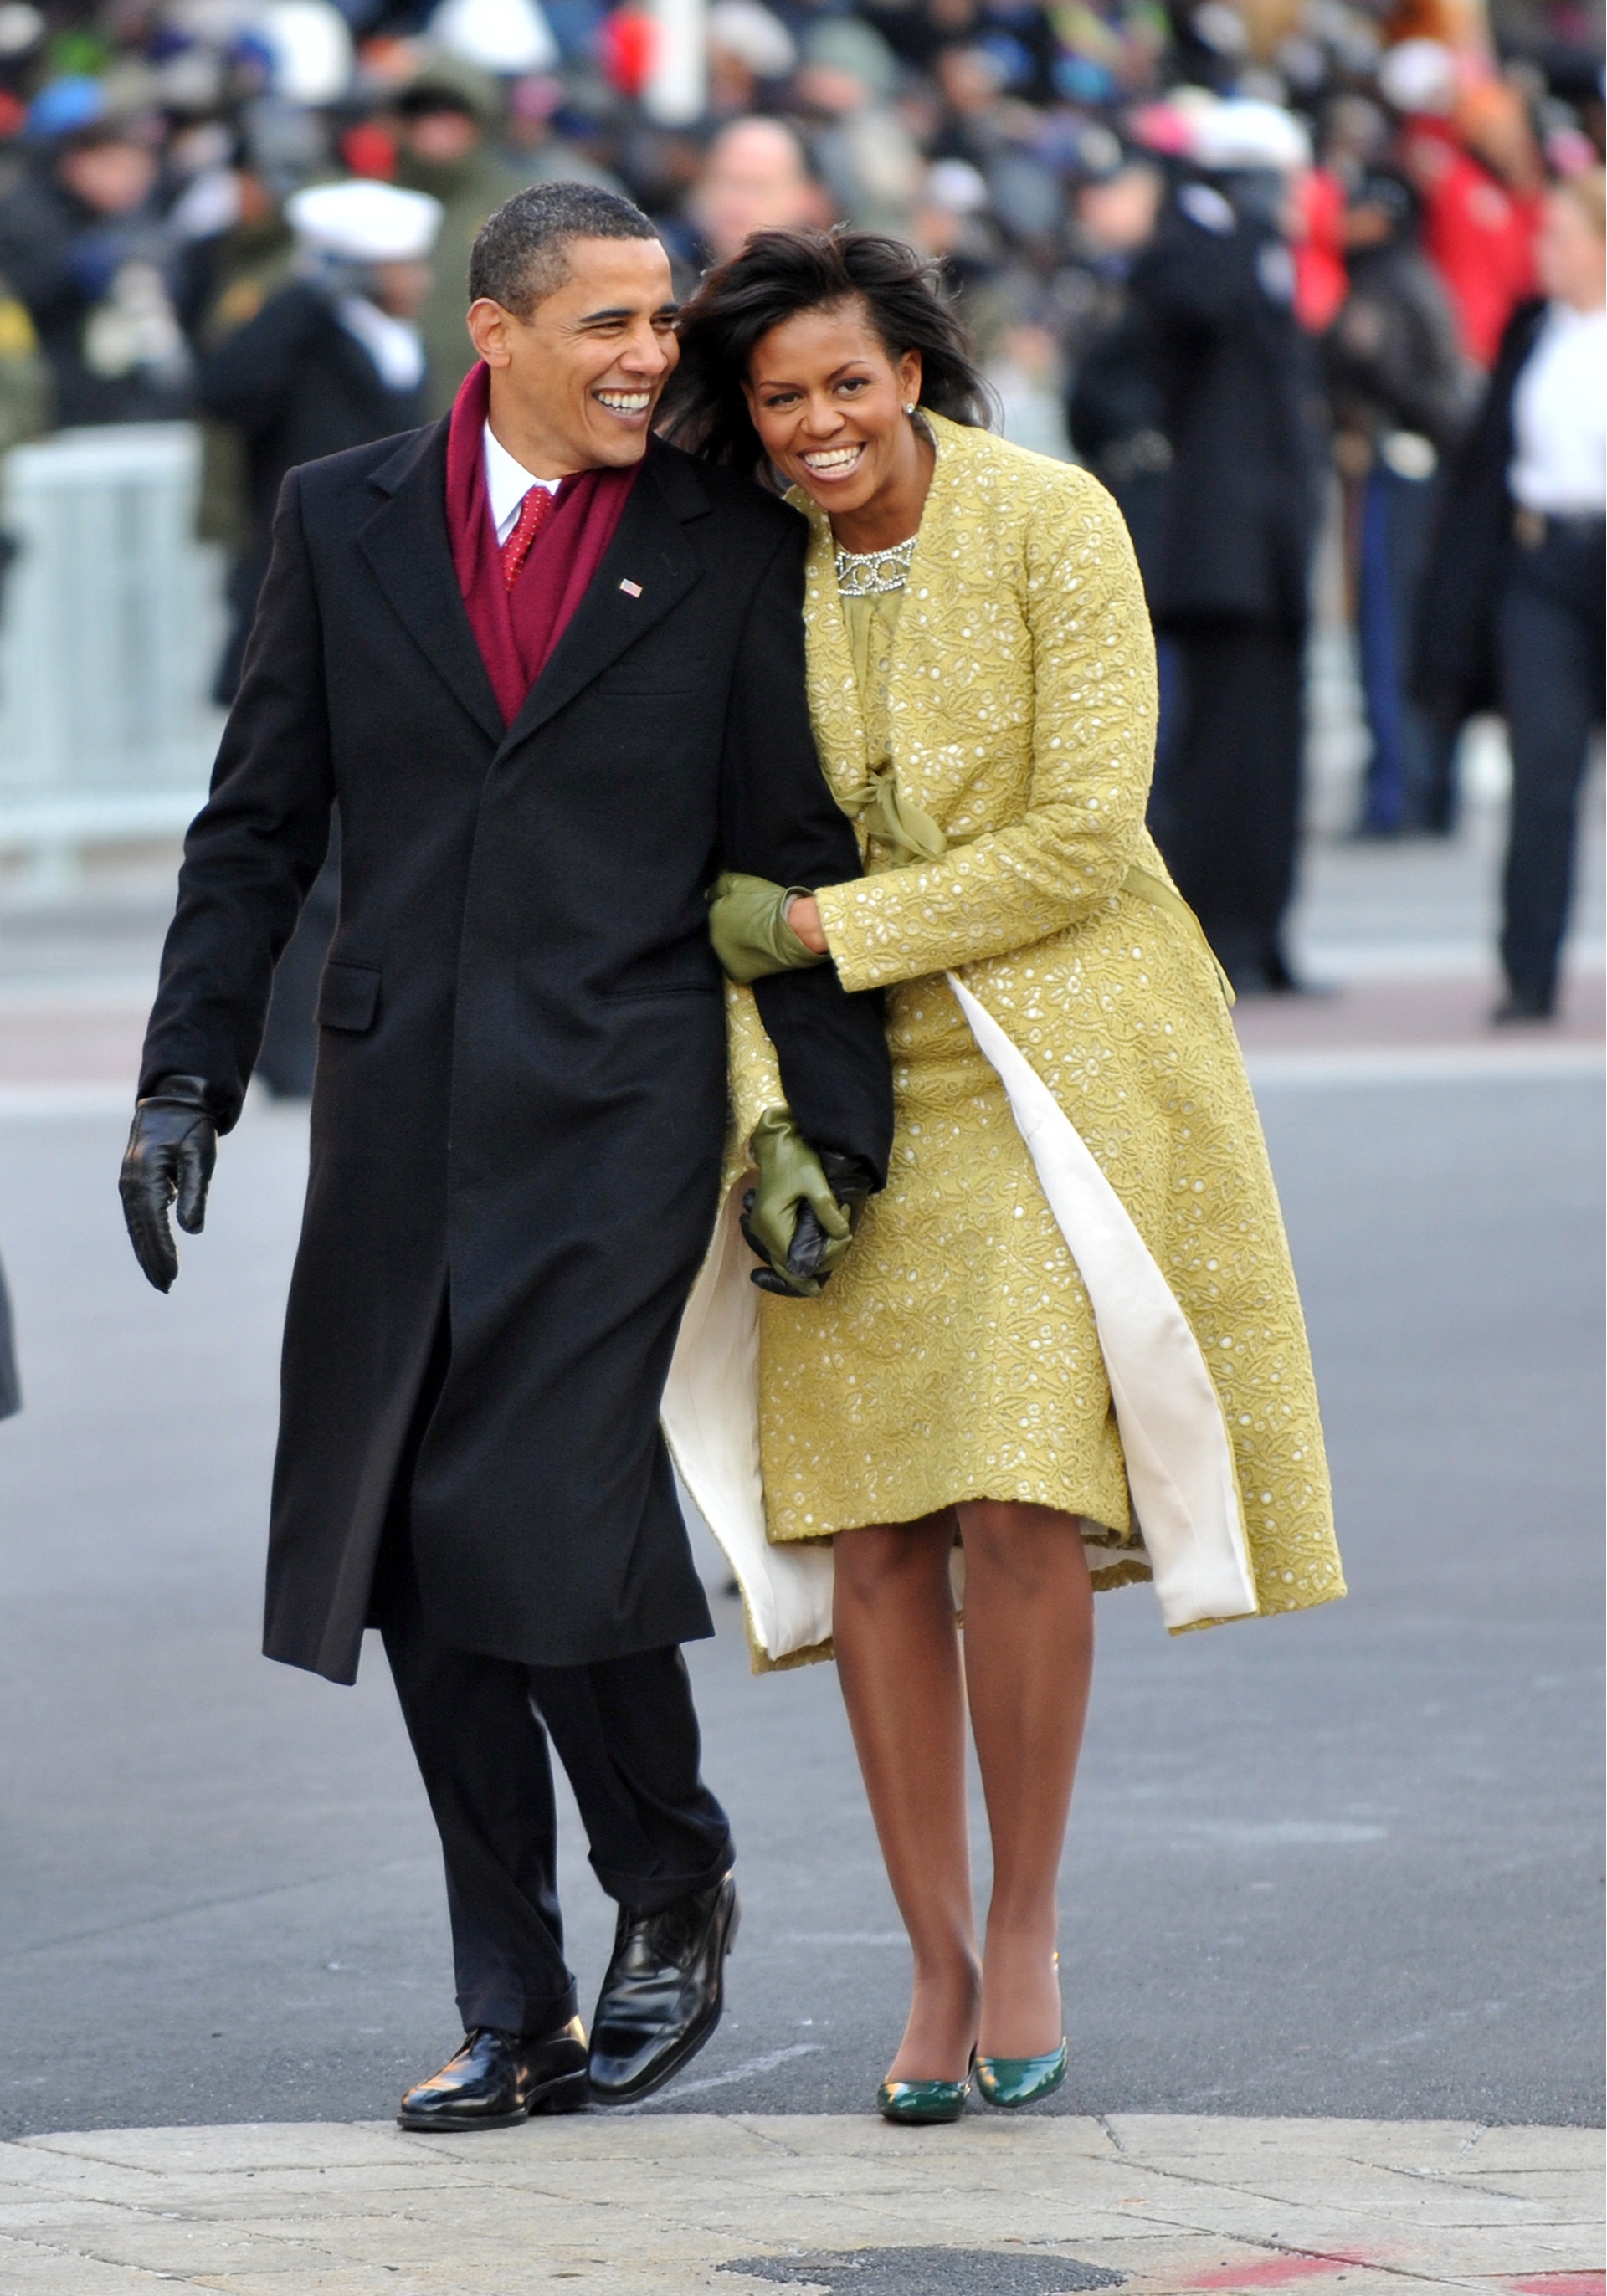 Барак Обама в пальто Brooks Brothers и Мишель Обама в пальто и платье Isabel Toledo, кардигане Nina Ricci, перчатках J. Crew и туфлях Jimmy Choo, инаугурационный парад, 2009 год